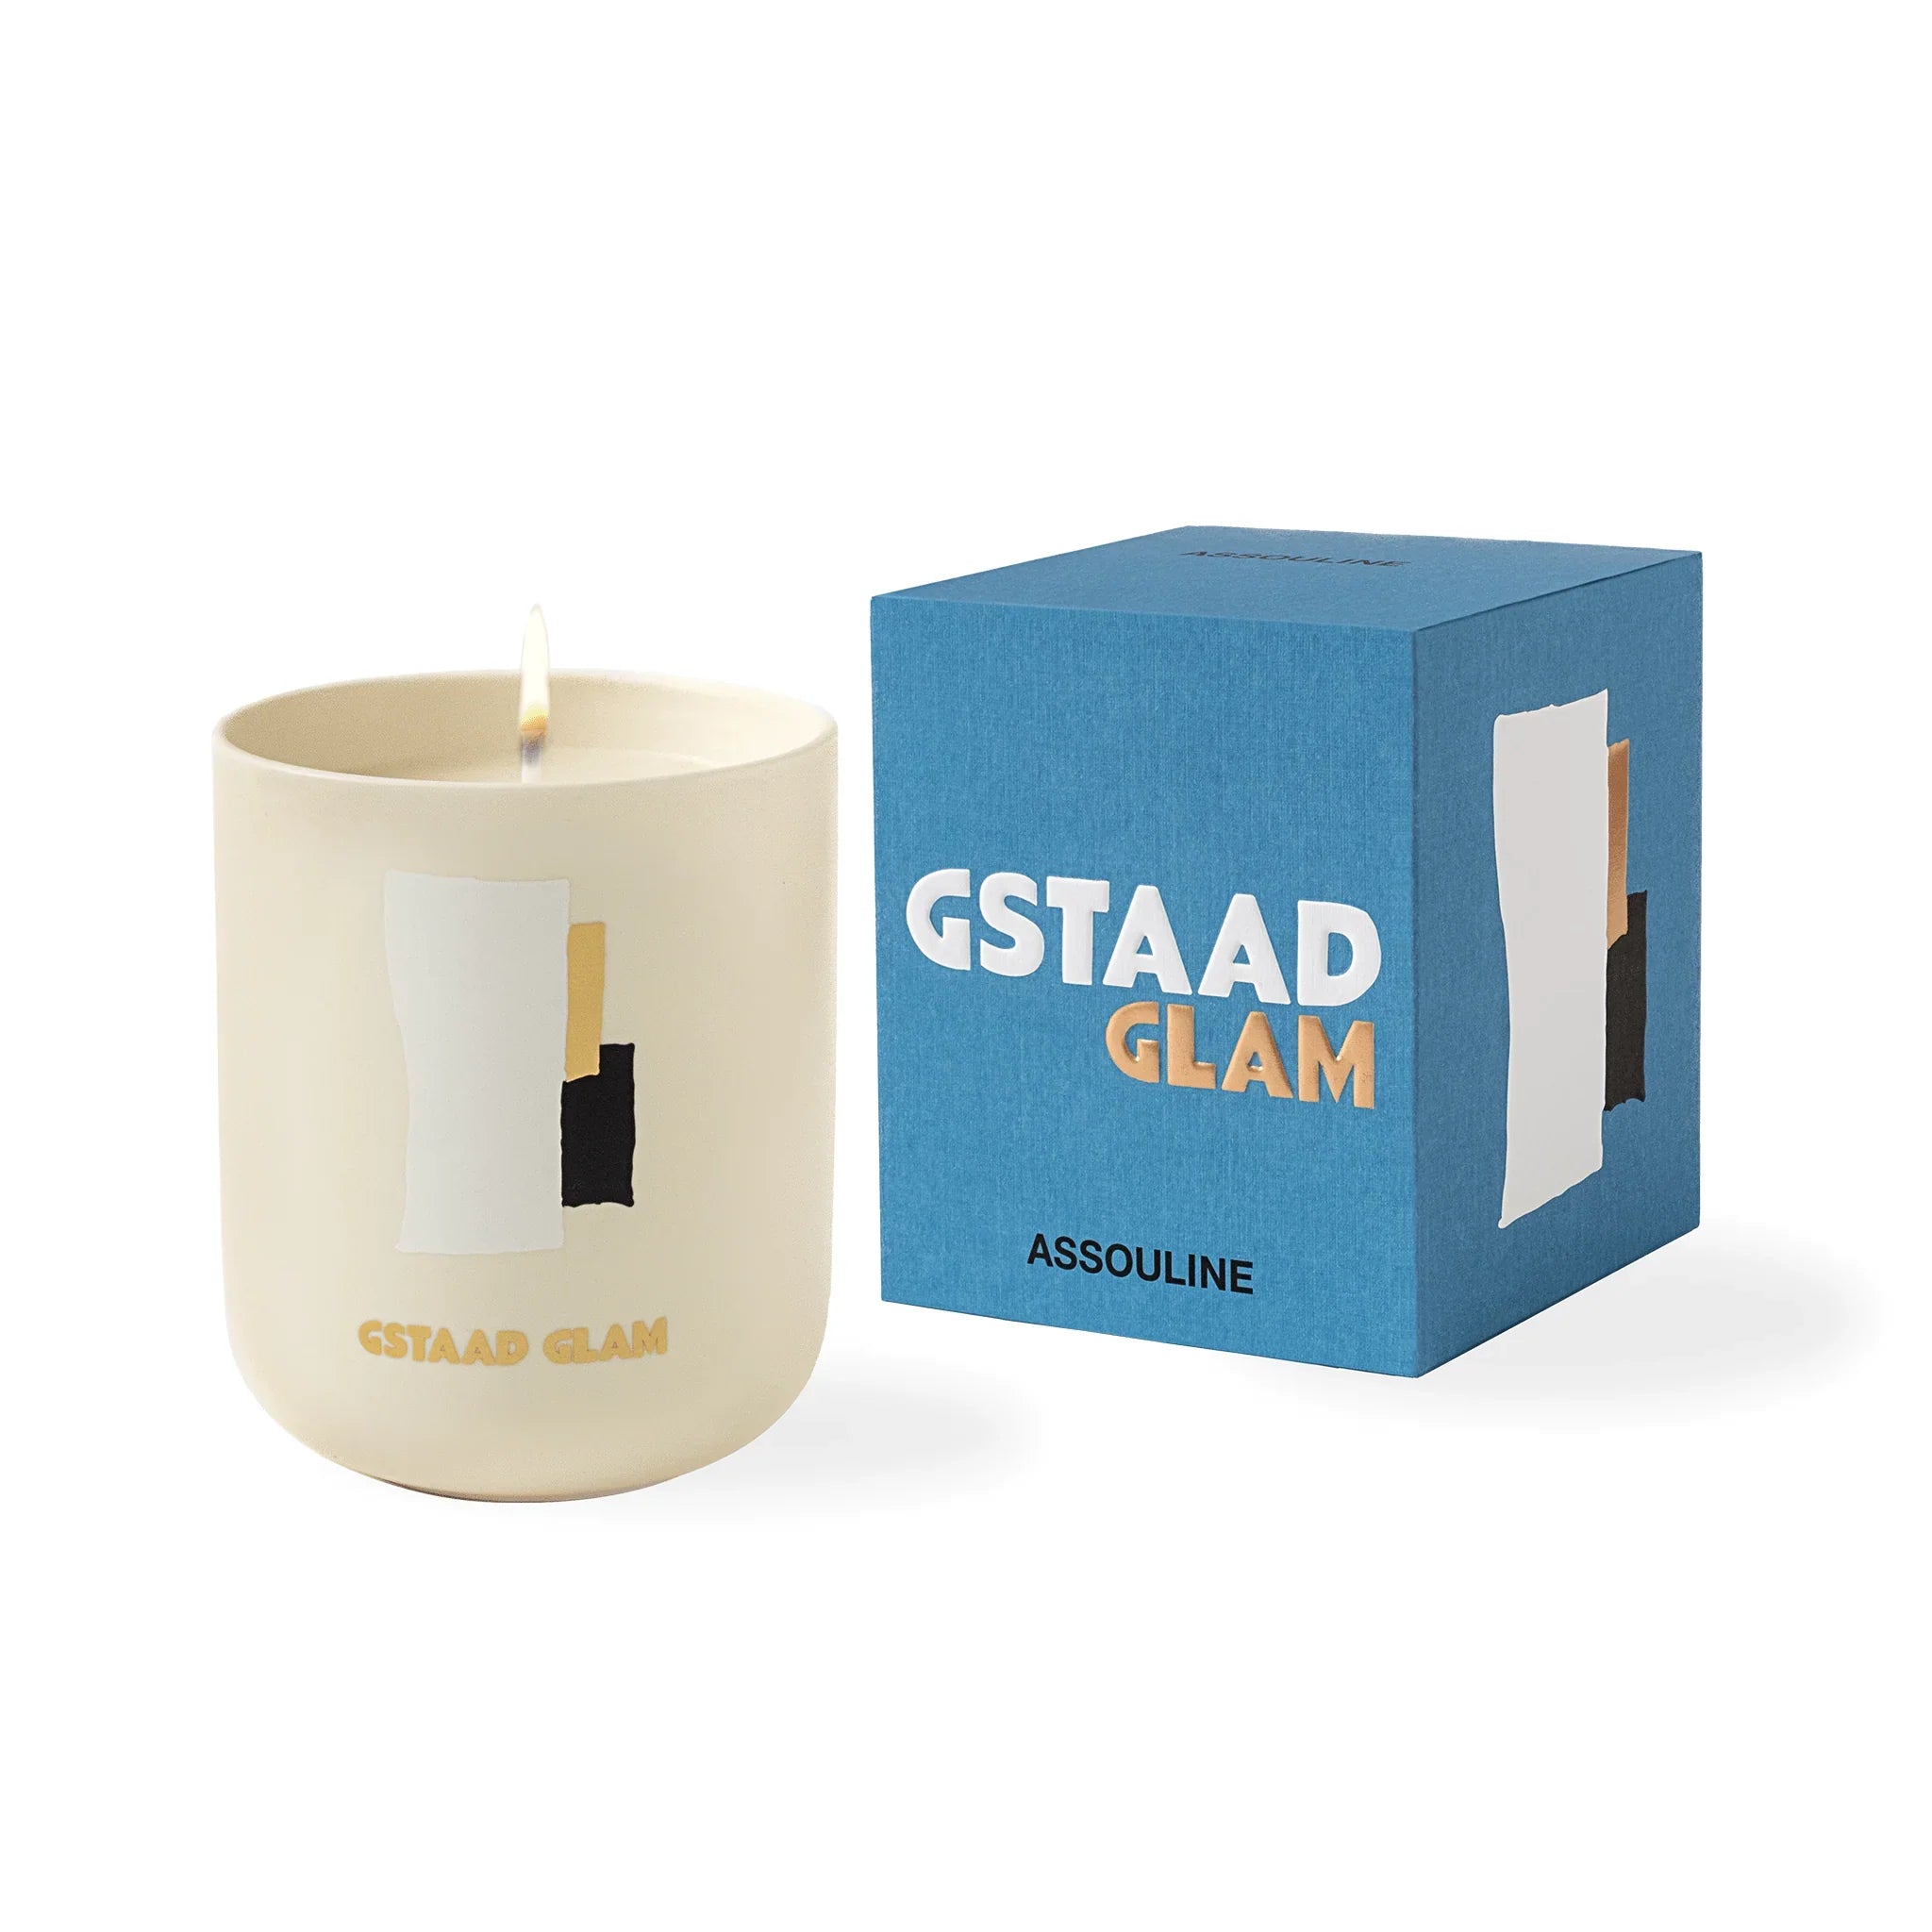 Assouline Gstaad Glam – Bougie Voyage De La Maison